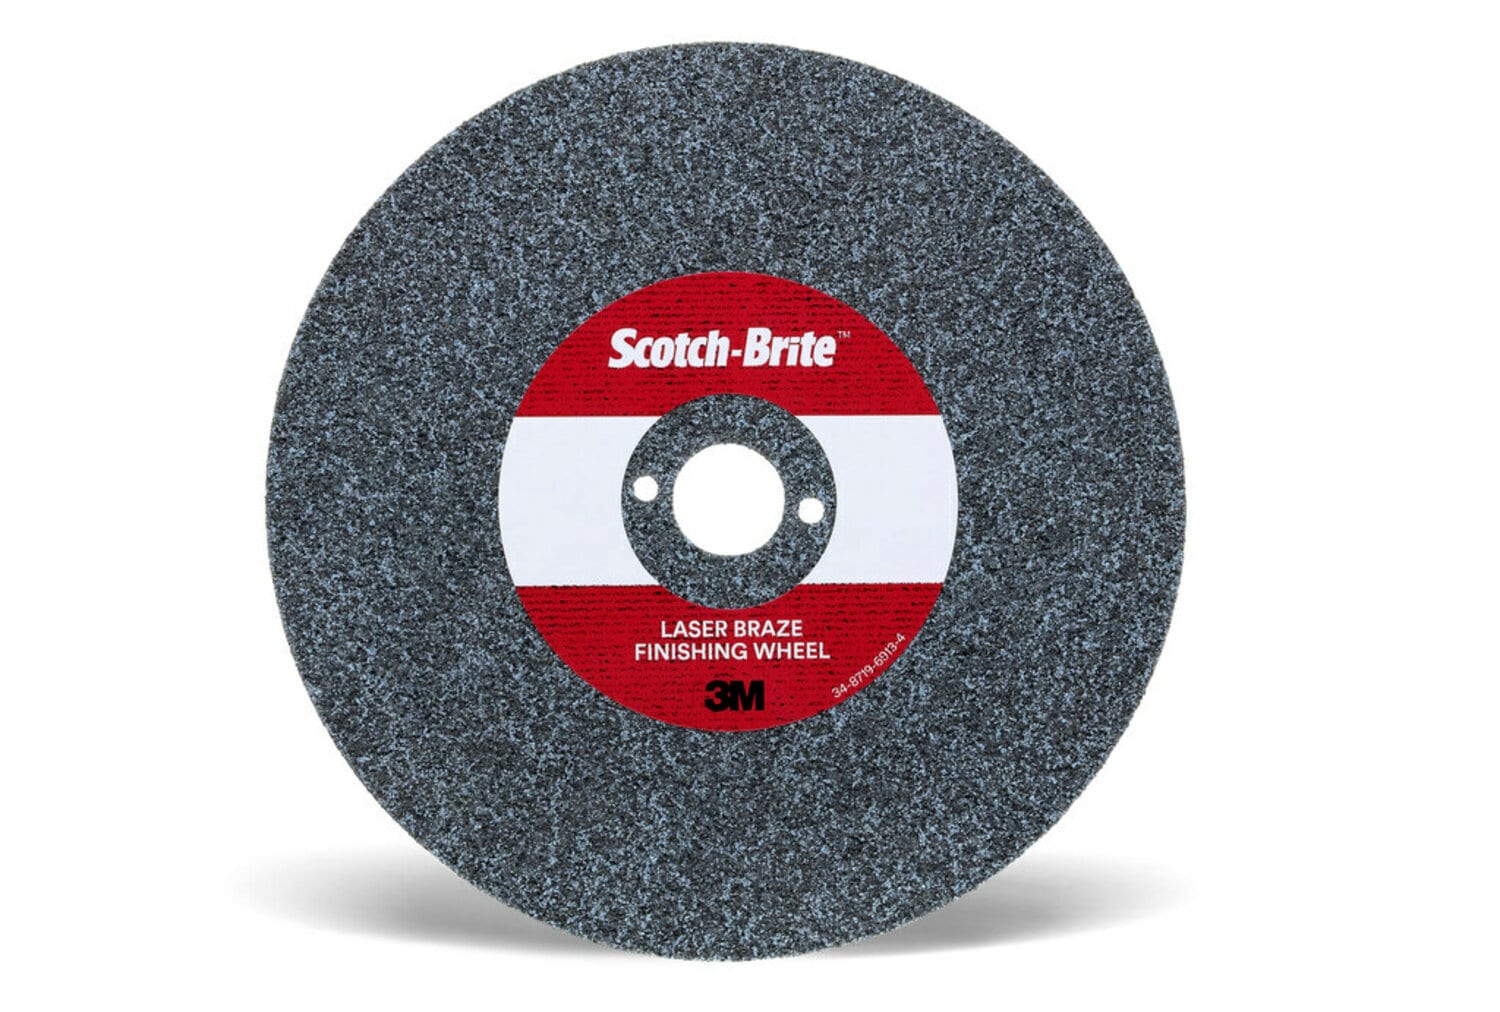 7100115972 - Scotch-Brite Laser Braze Finishing Wheel, 9 in x 3.7mm x 1-1/4 in, 10
ea/Case